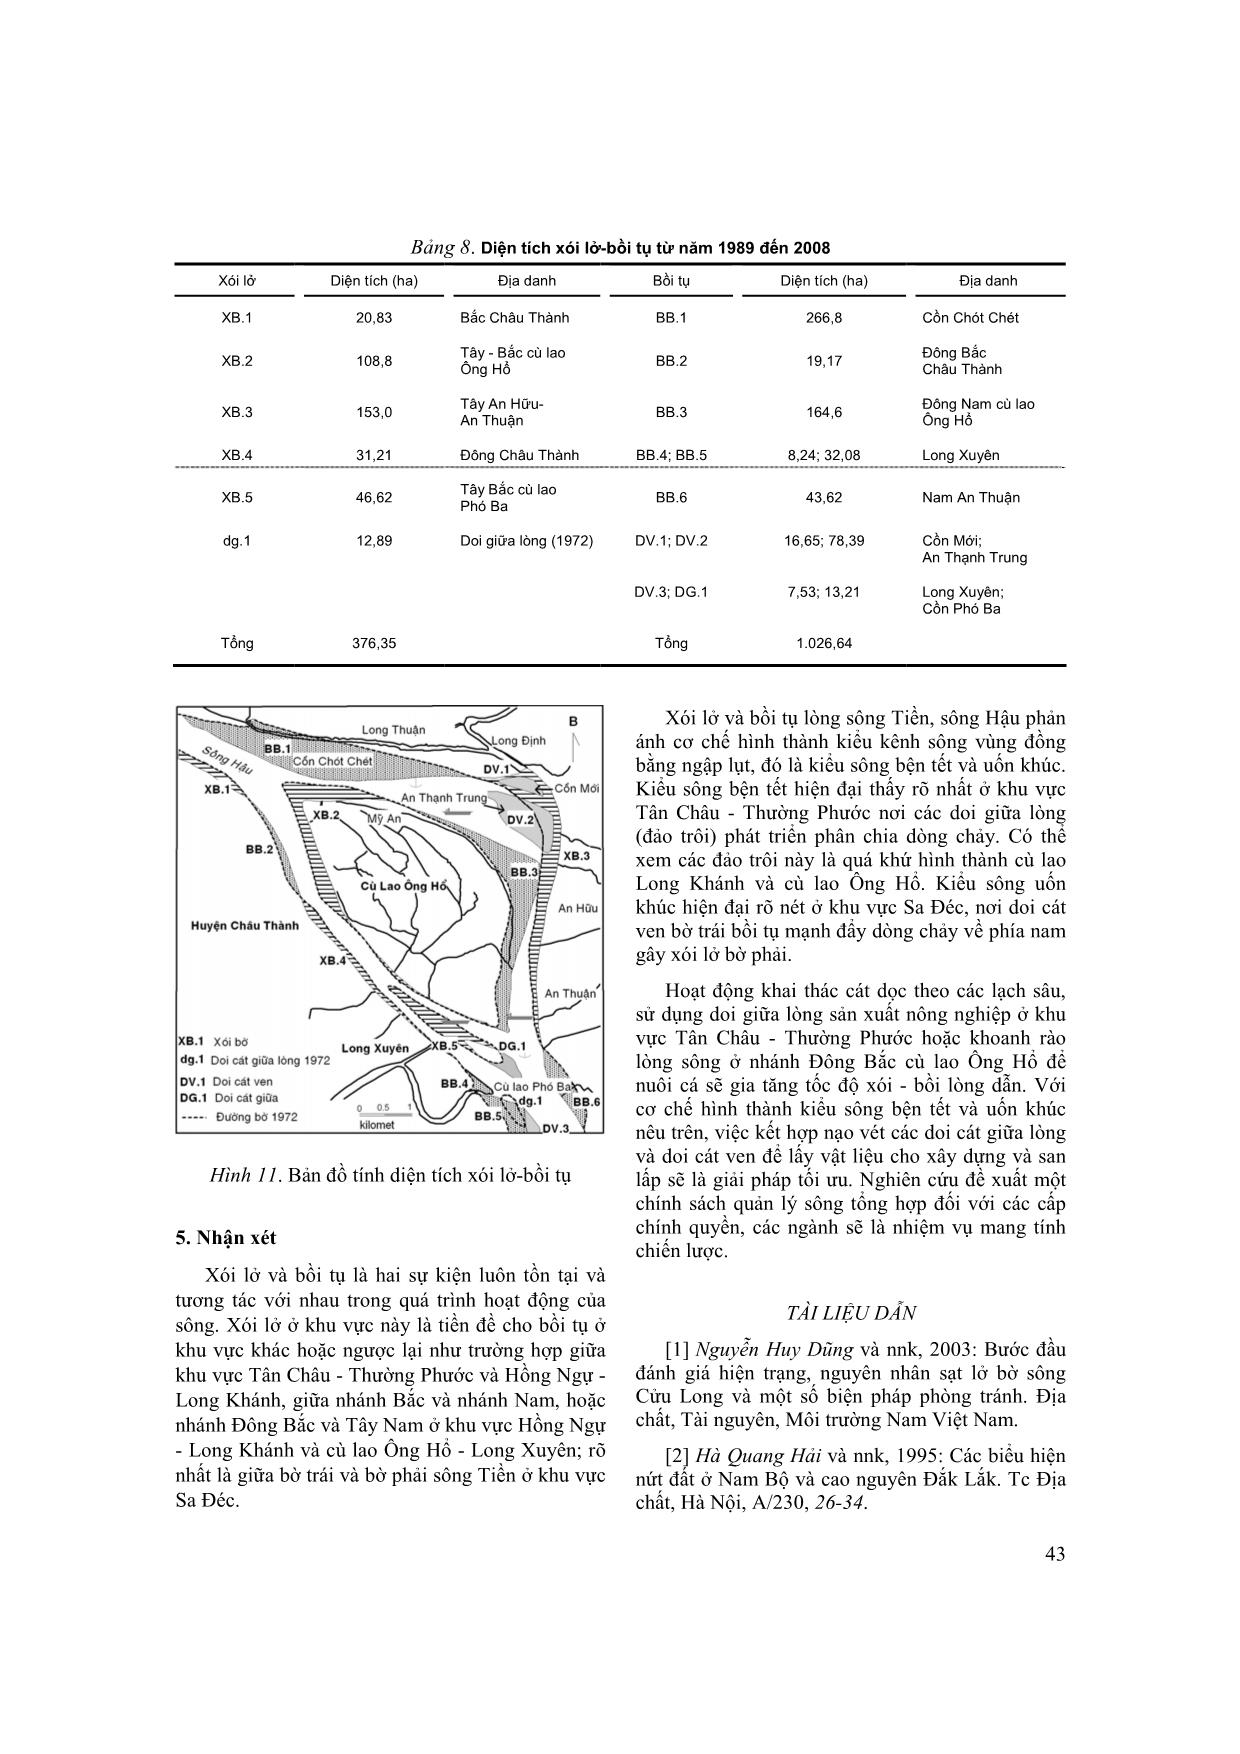 Tương quan xói lở - bồi tụ một số khu vực lòng sông Tiền, sông Hậu trang 7